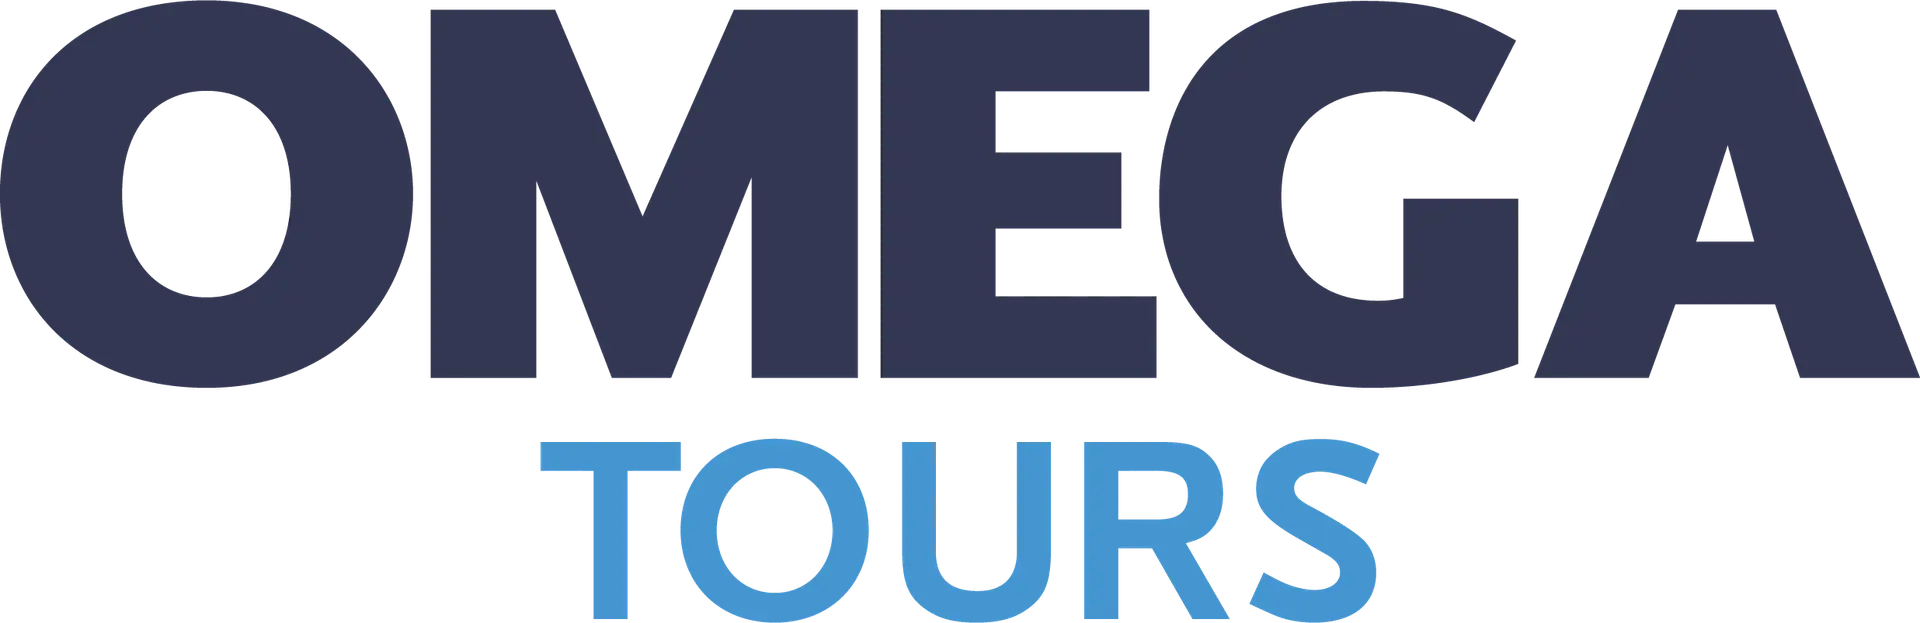 Omega Tours